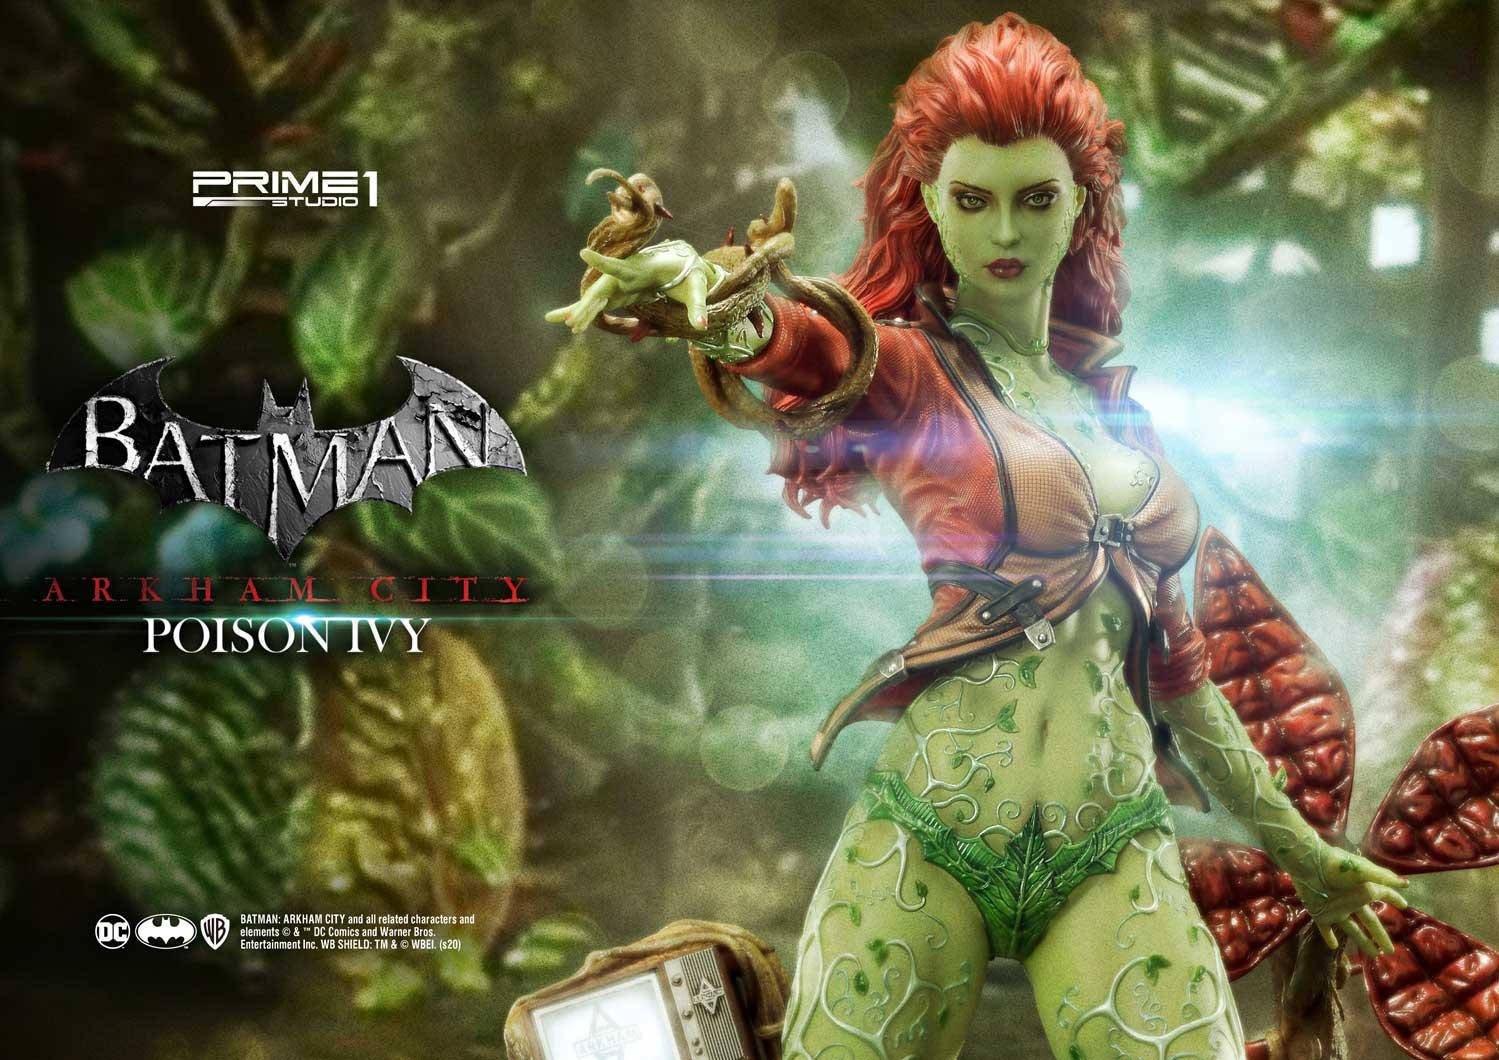 Immagine di Poison Ivy da Prime 1 Studio